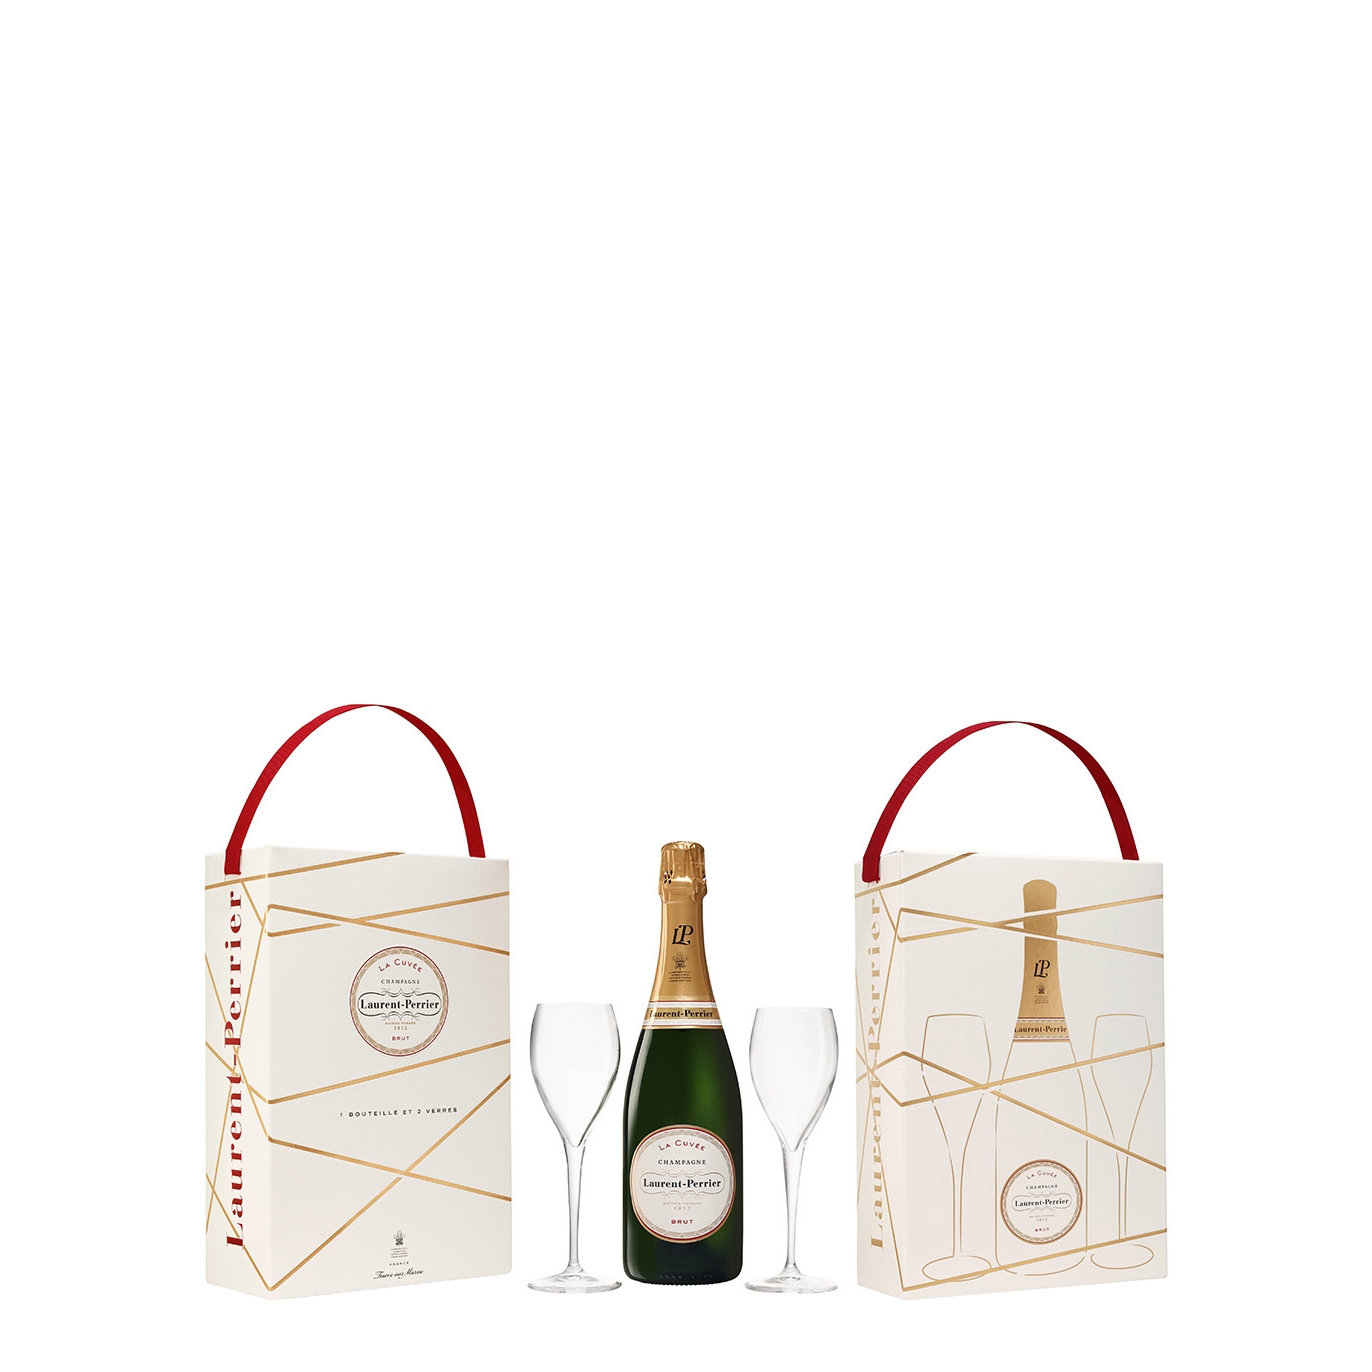 Laurent-perrier La Cuvée Champagne Flute Gift Set NV Sparkling Wine